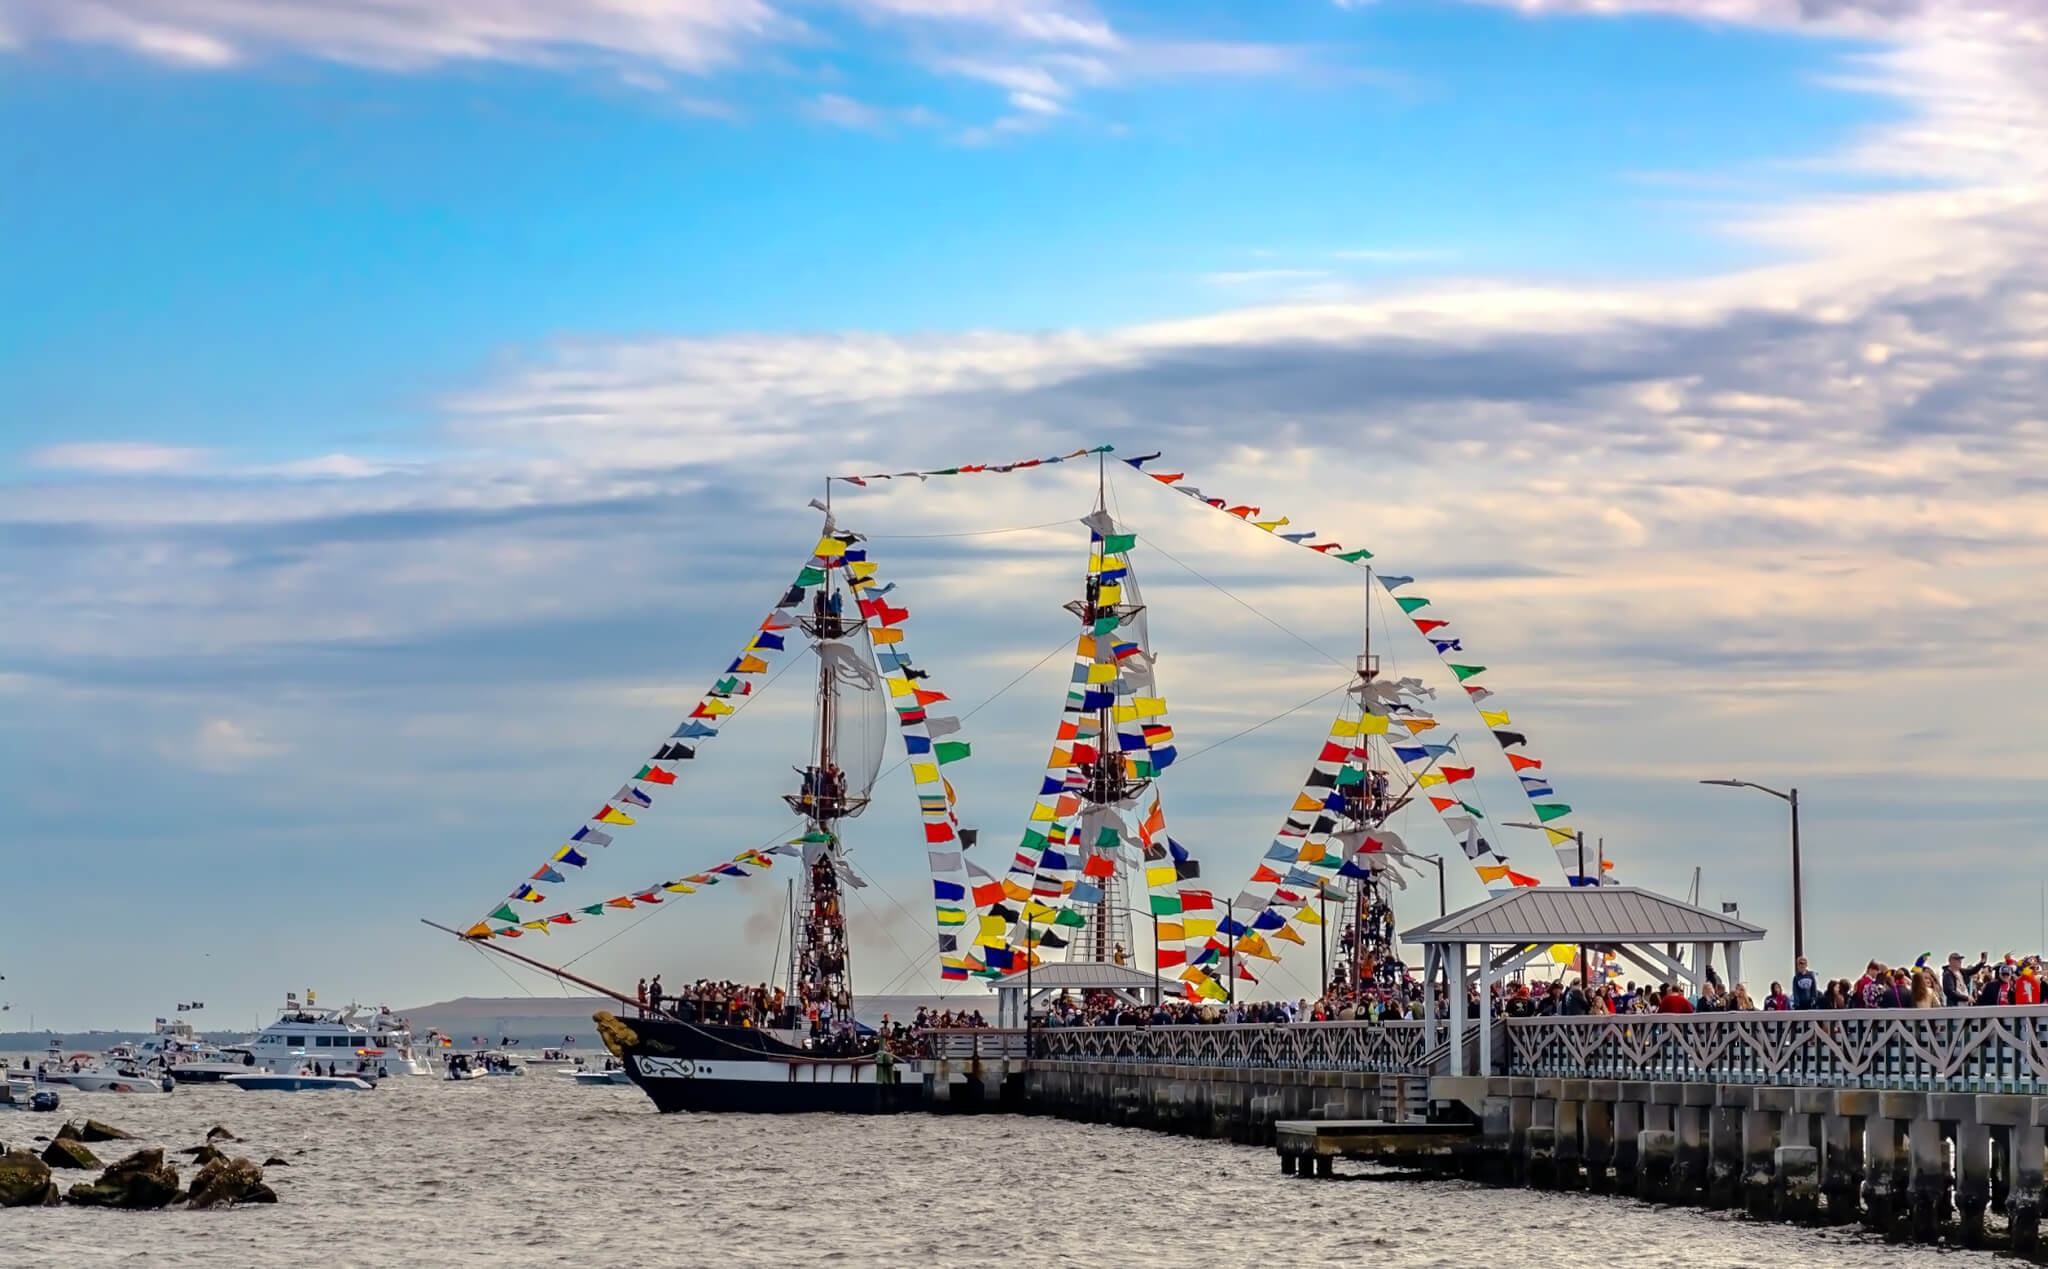 Gasparilla Pirate Festival at Tampa Florida, Ballast Point pier Tampa